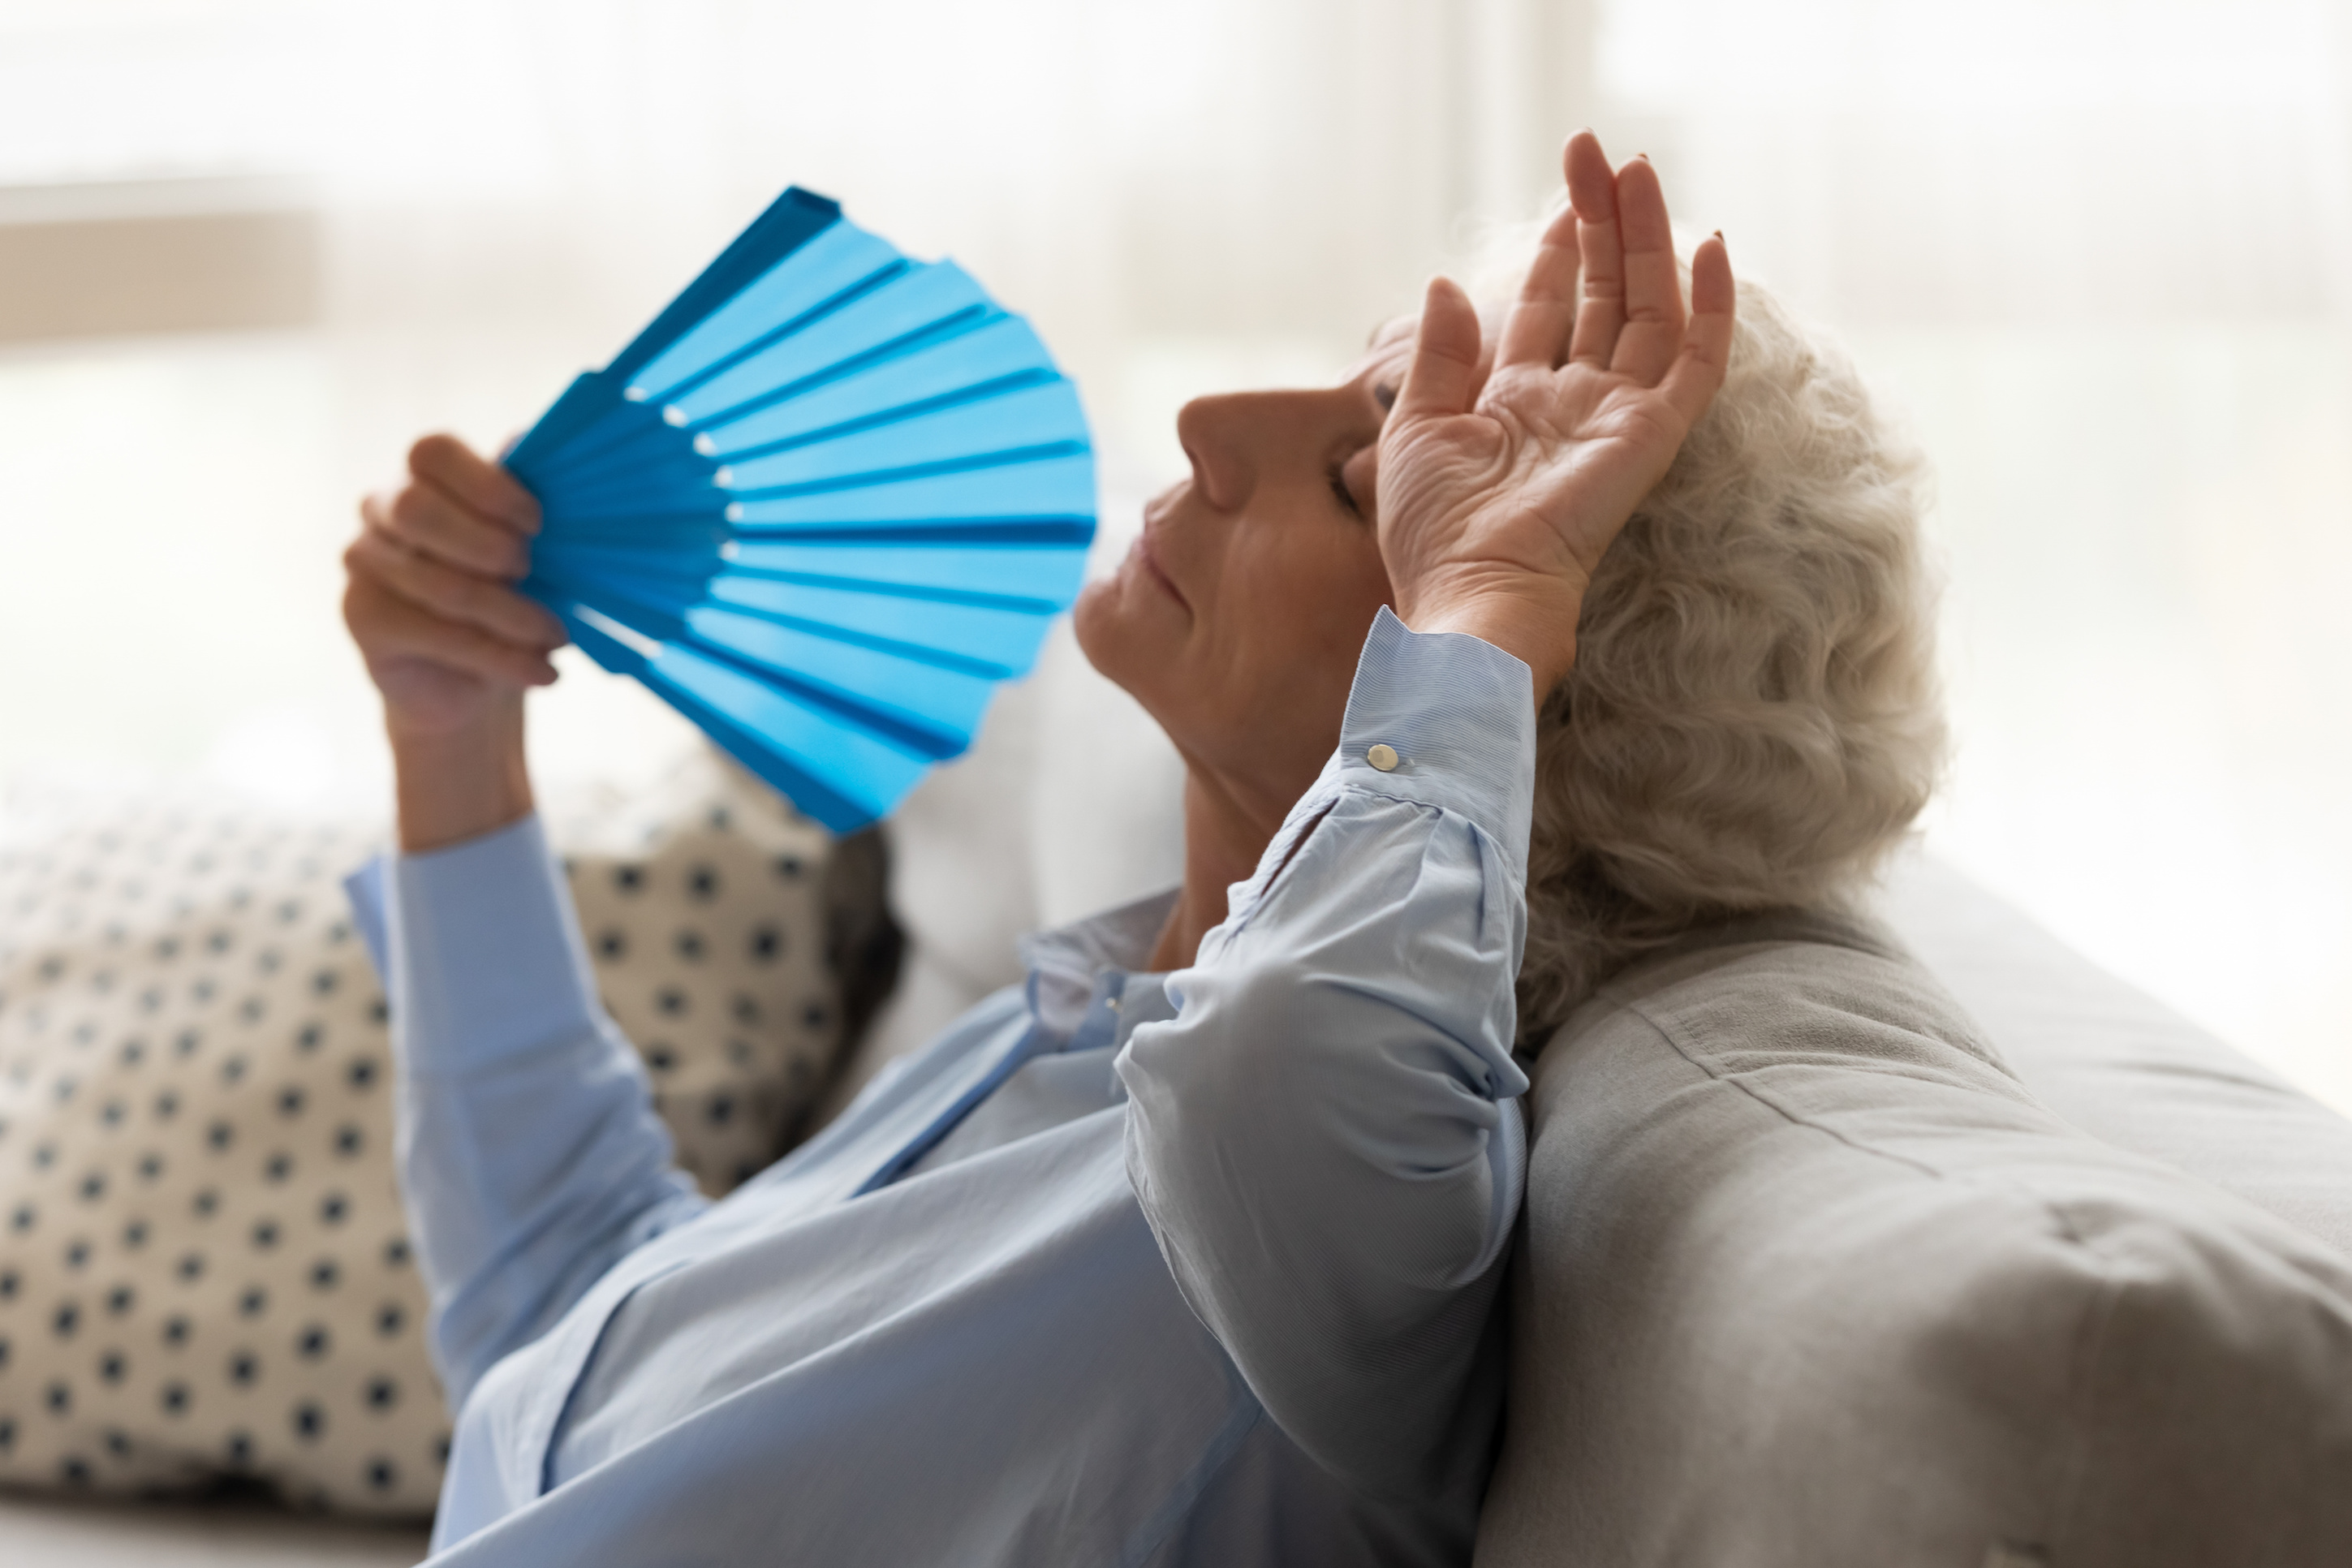 Les personnes âgées sont plus vulnérables et résistent souvent mal aux vagues de chaleur. © Fizkes, Adobe Stock